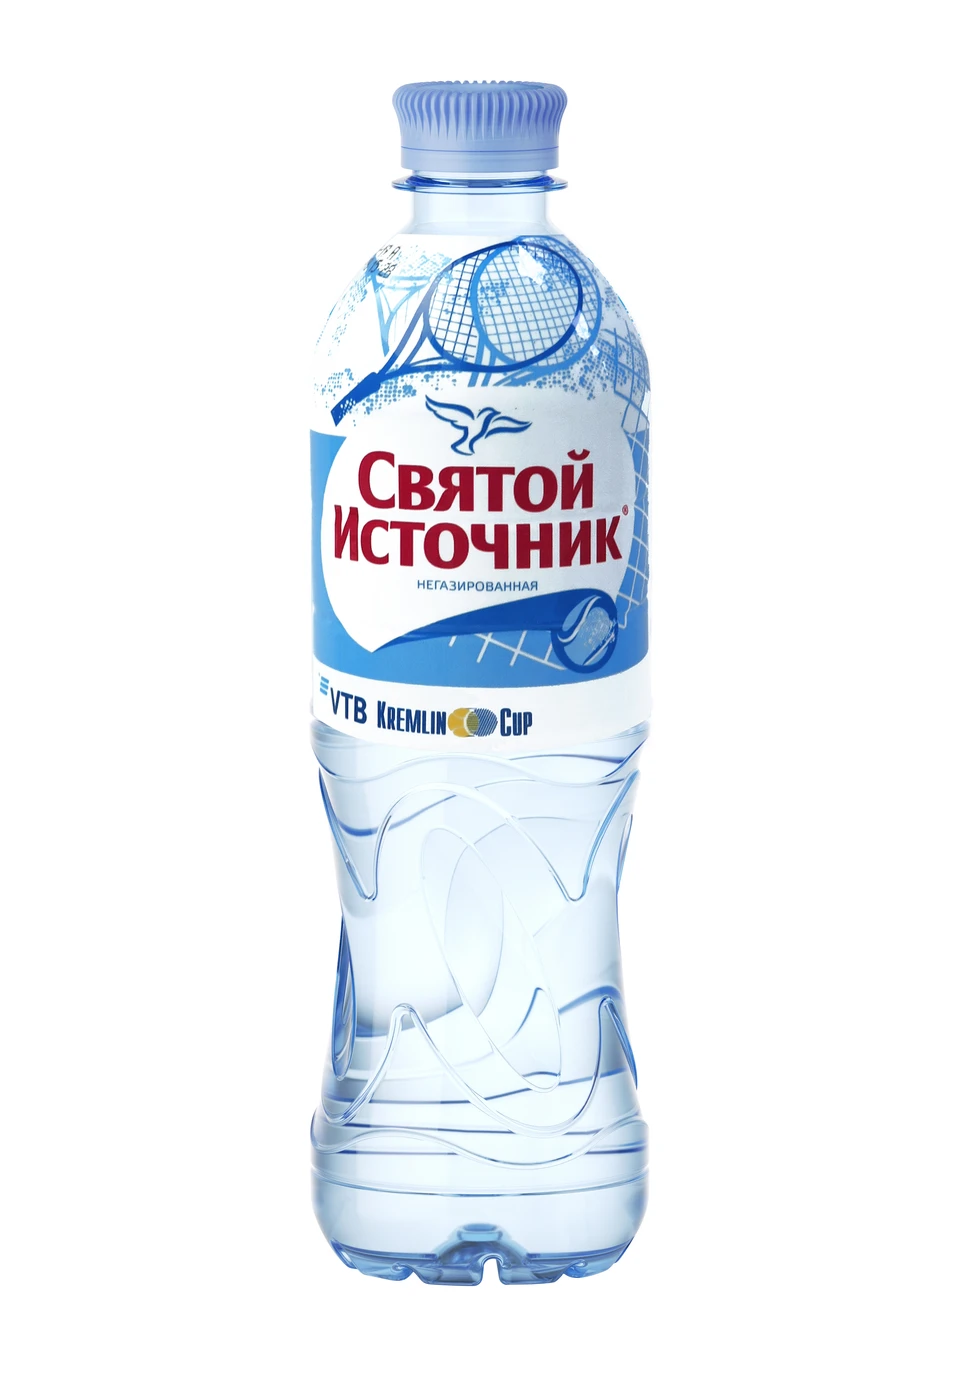 IDS Borjomi Russia порадовал поклонников тенниса и выпустил новую серию бутылок